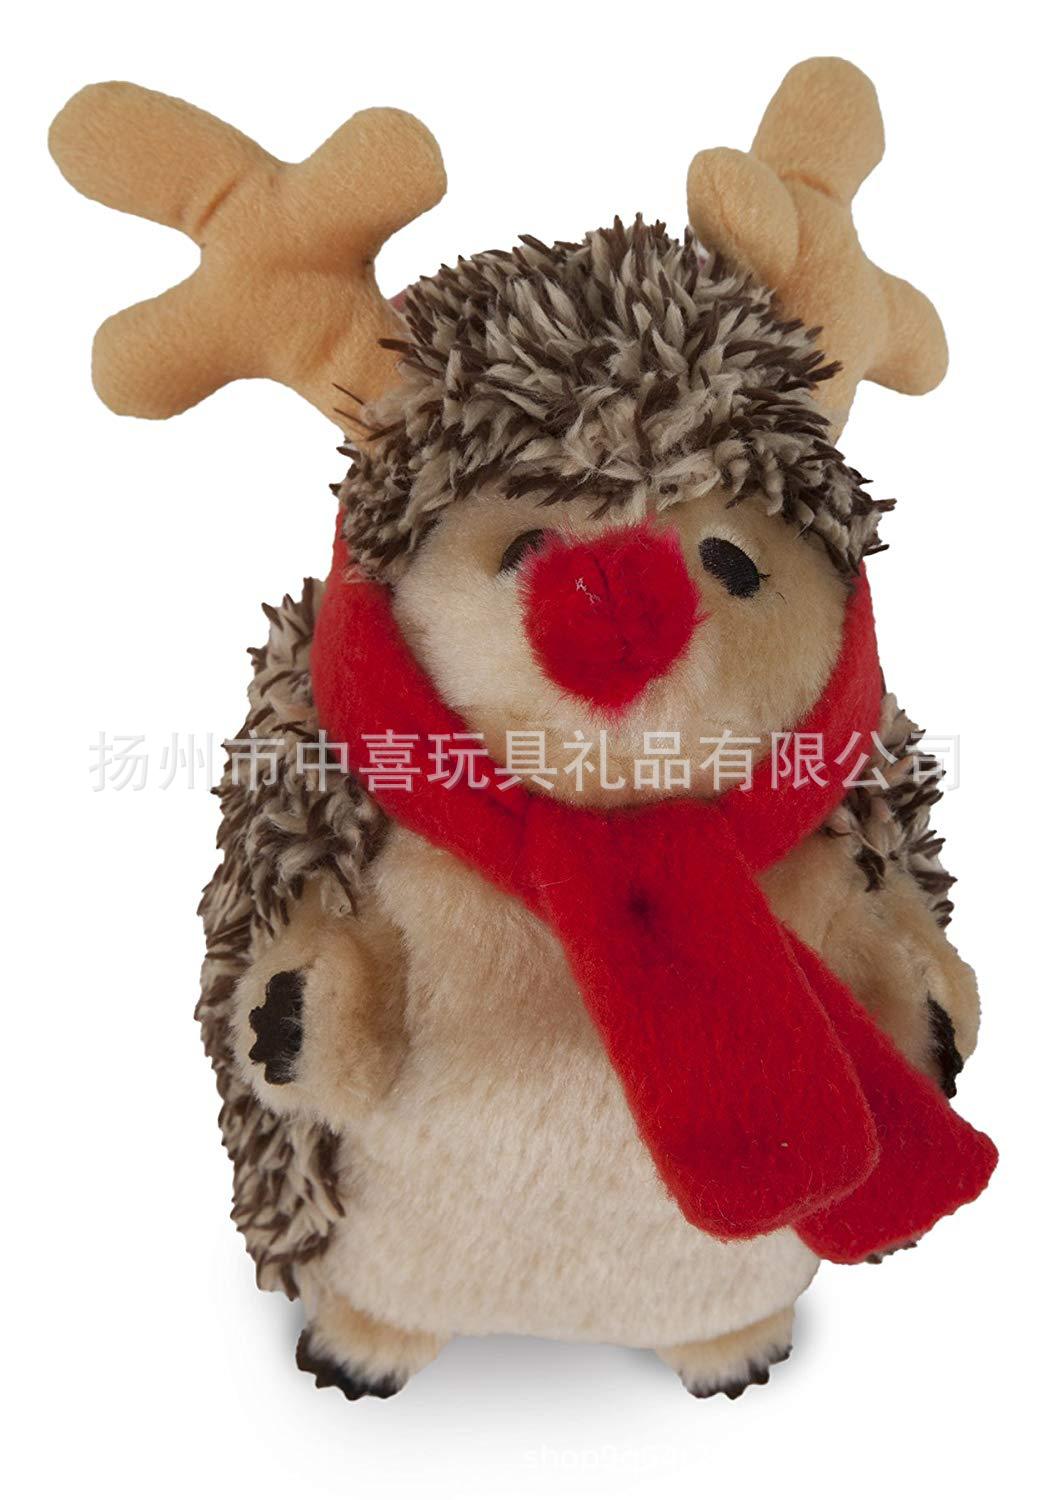 扬州工厂圣诞节毛绒玩偶针织围巾刺猬礼品外贸来图出口